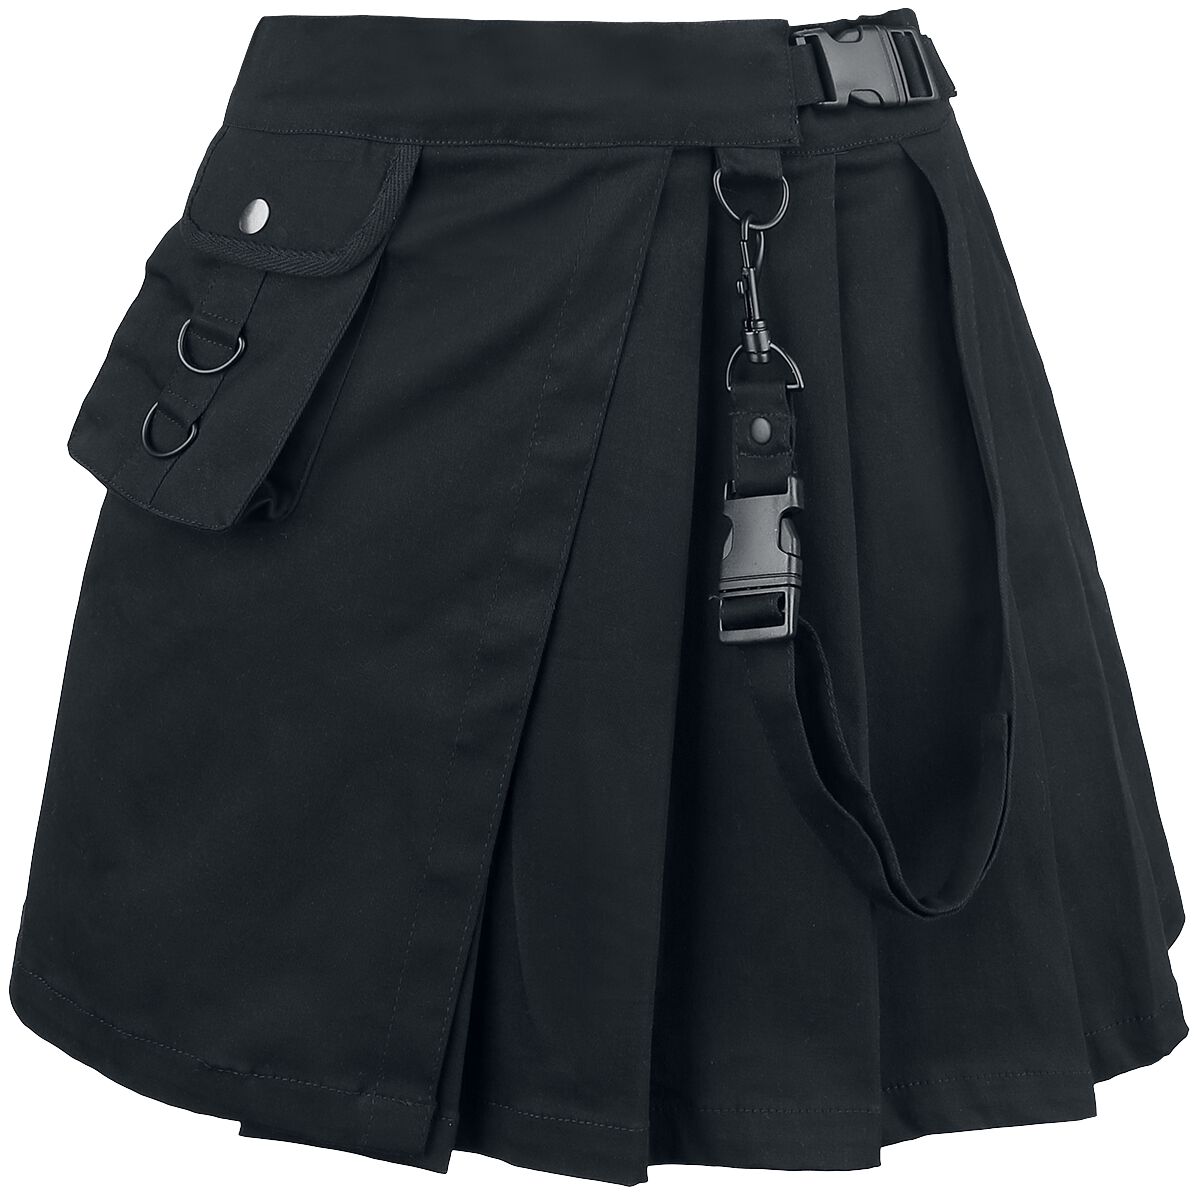 Chemical Black Infinity Skirt Short skirt black